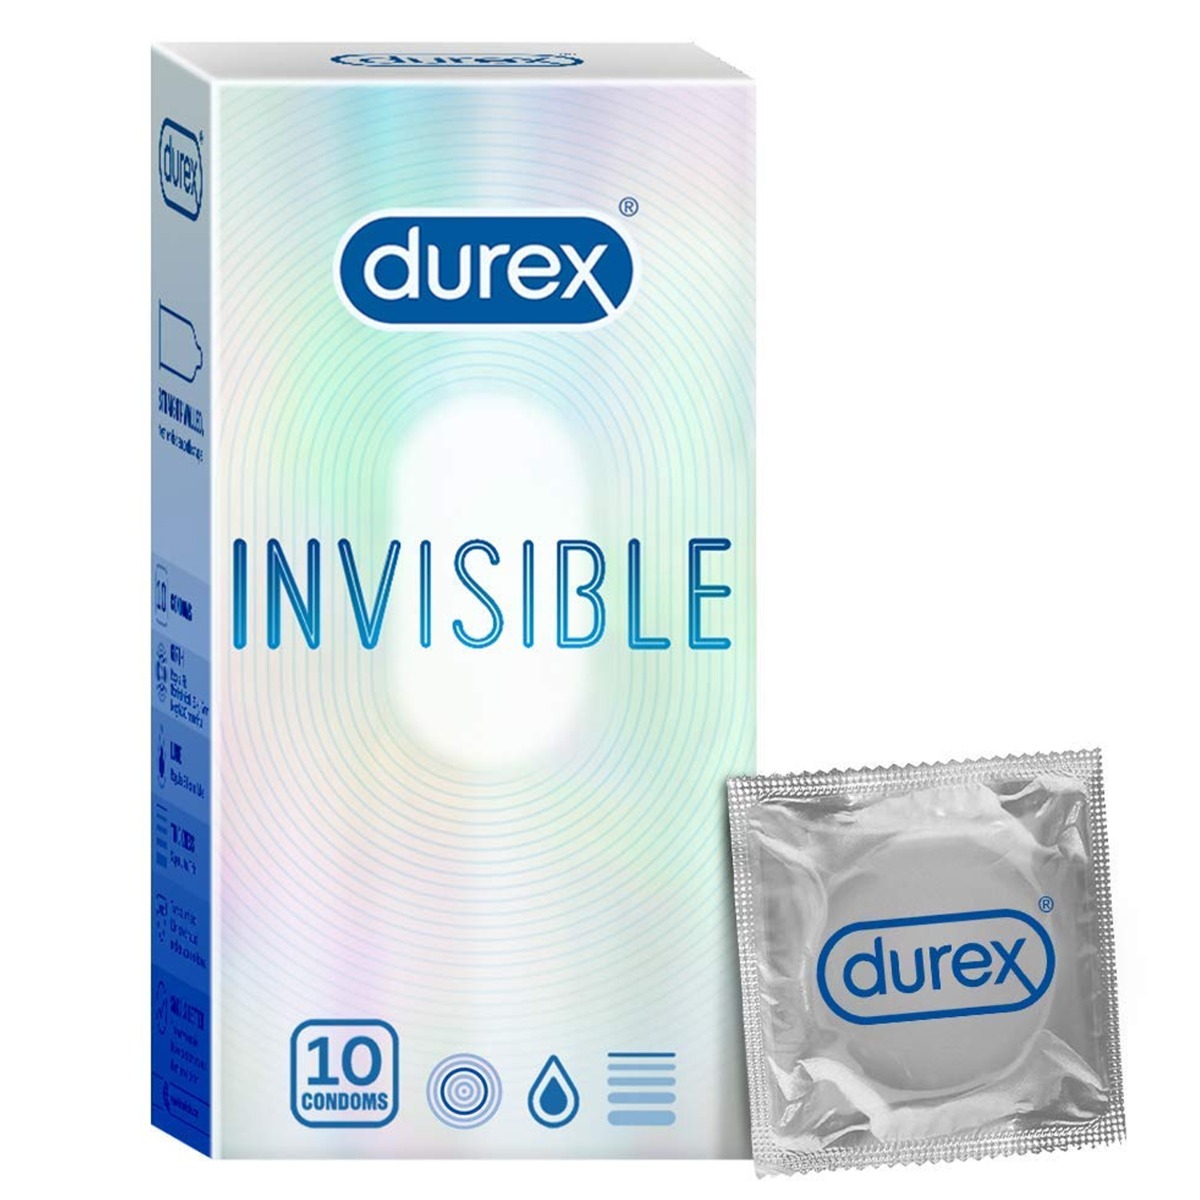 Durex Invisible Condoms, 10 Pieces